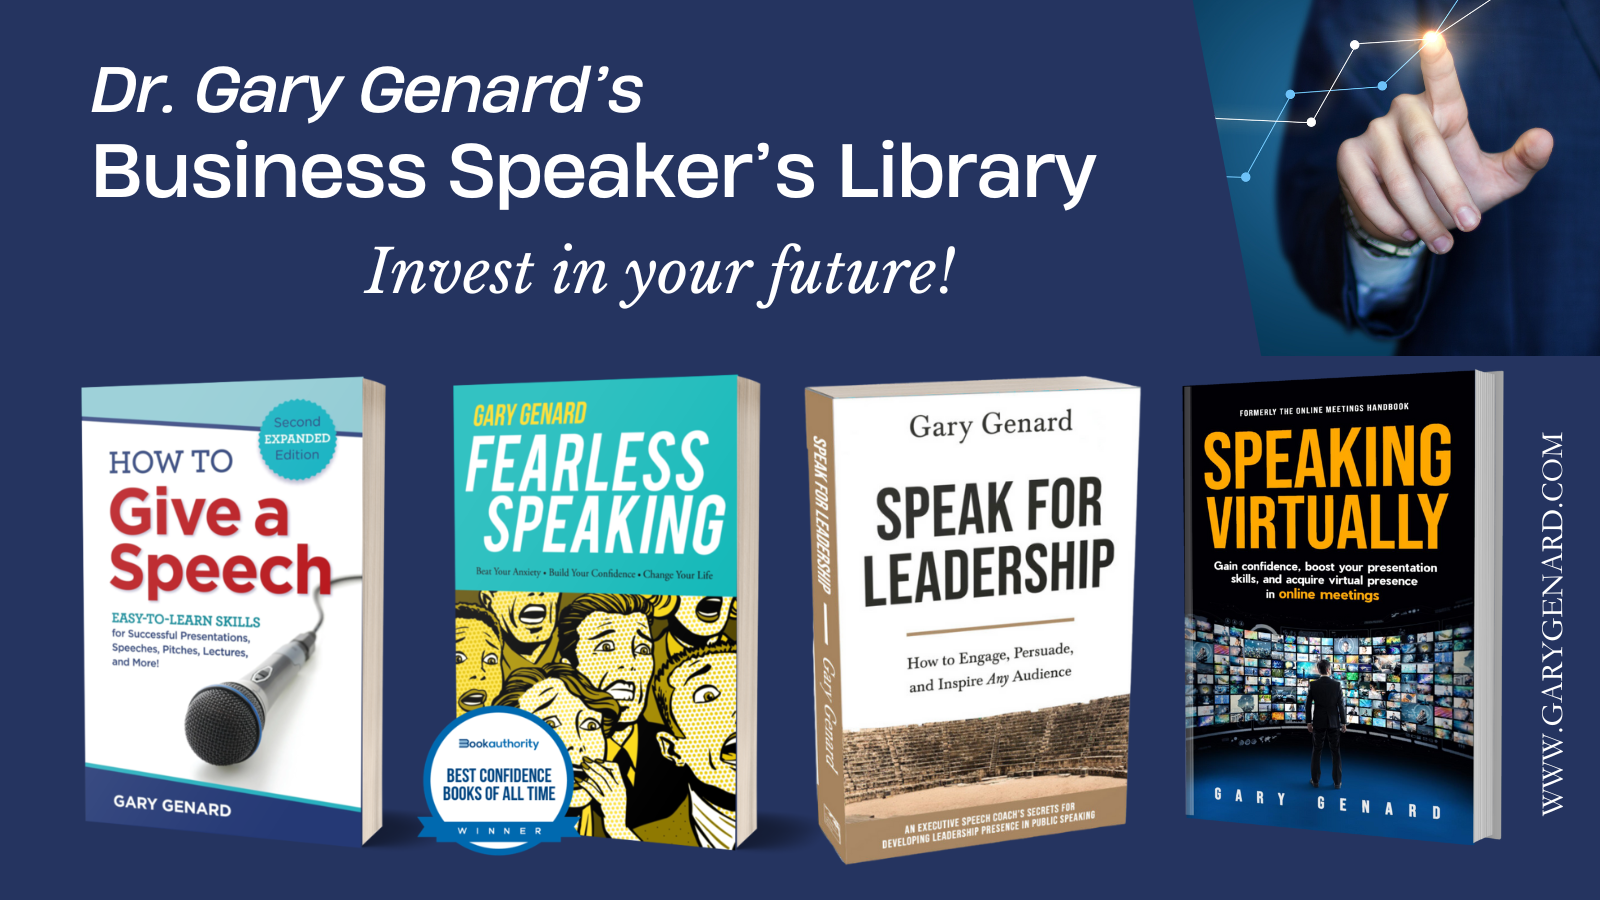 Dr. Gary Genard's Business Speaker's Library.